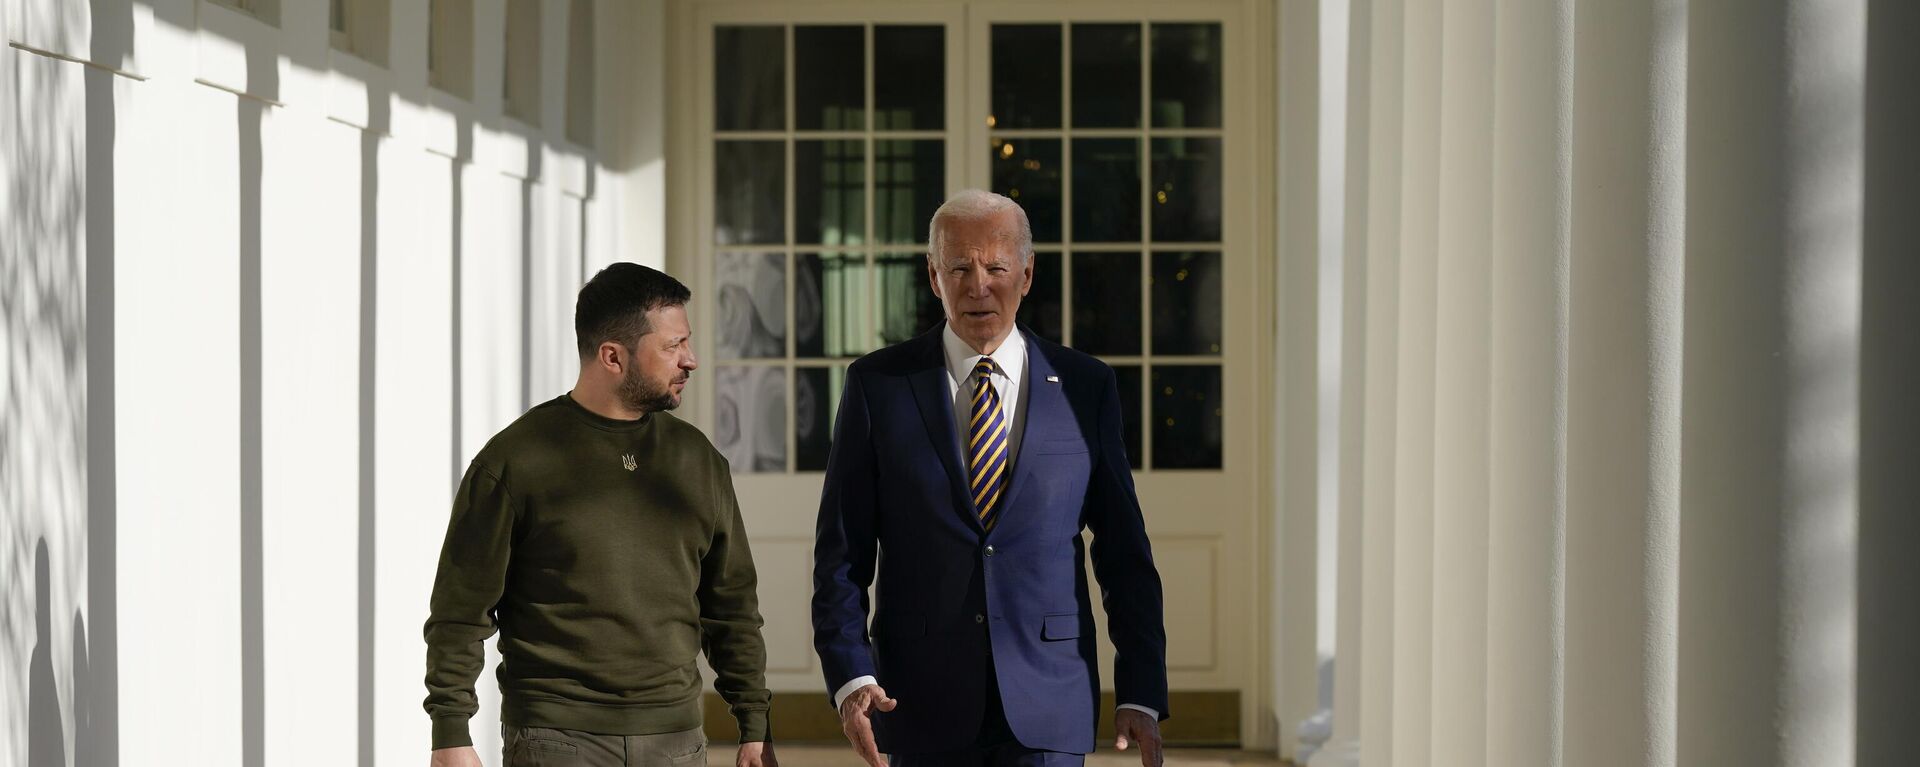 Tổng thống Joe Biden và Tổng thống Ukraina Vladimir Zelensky đi dọc theo hành lang Hàng cột ở Nhà Trắng, thứ Tư ngày 21/12/2022, Washington - Sputnik Việt Nam, 1920, 30.12.2022